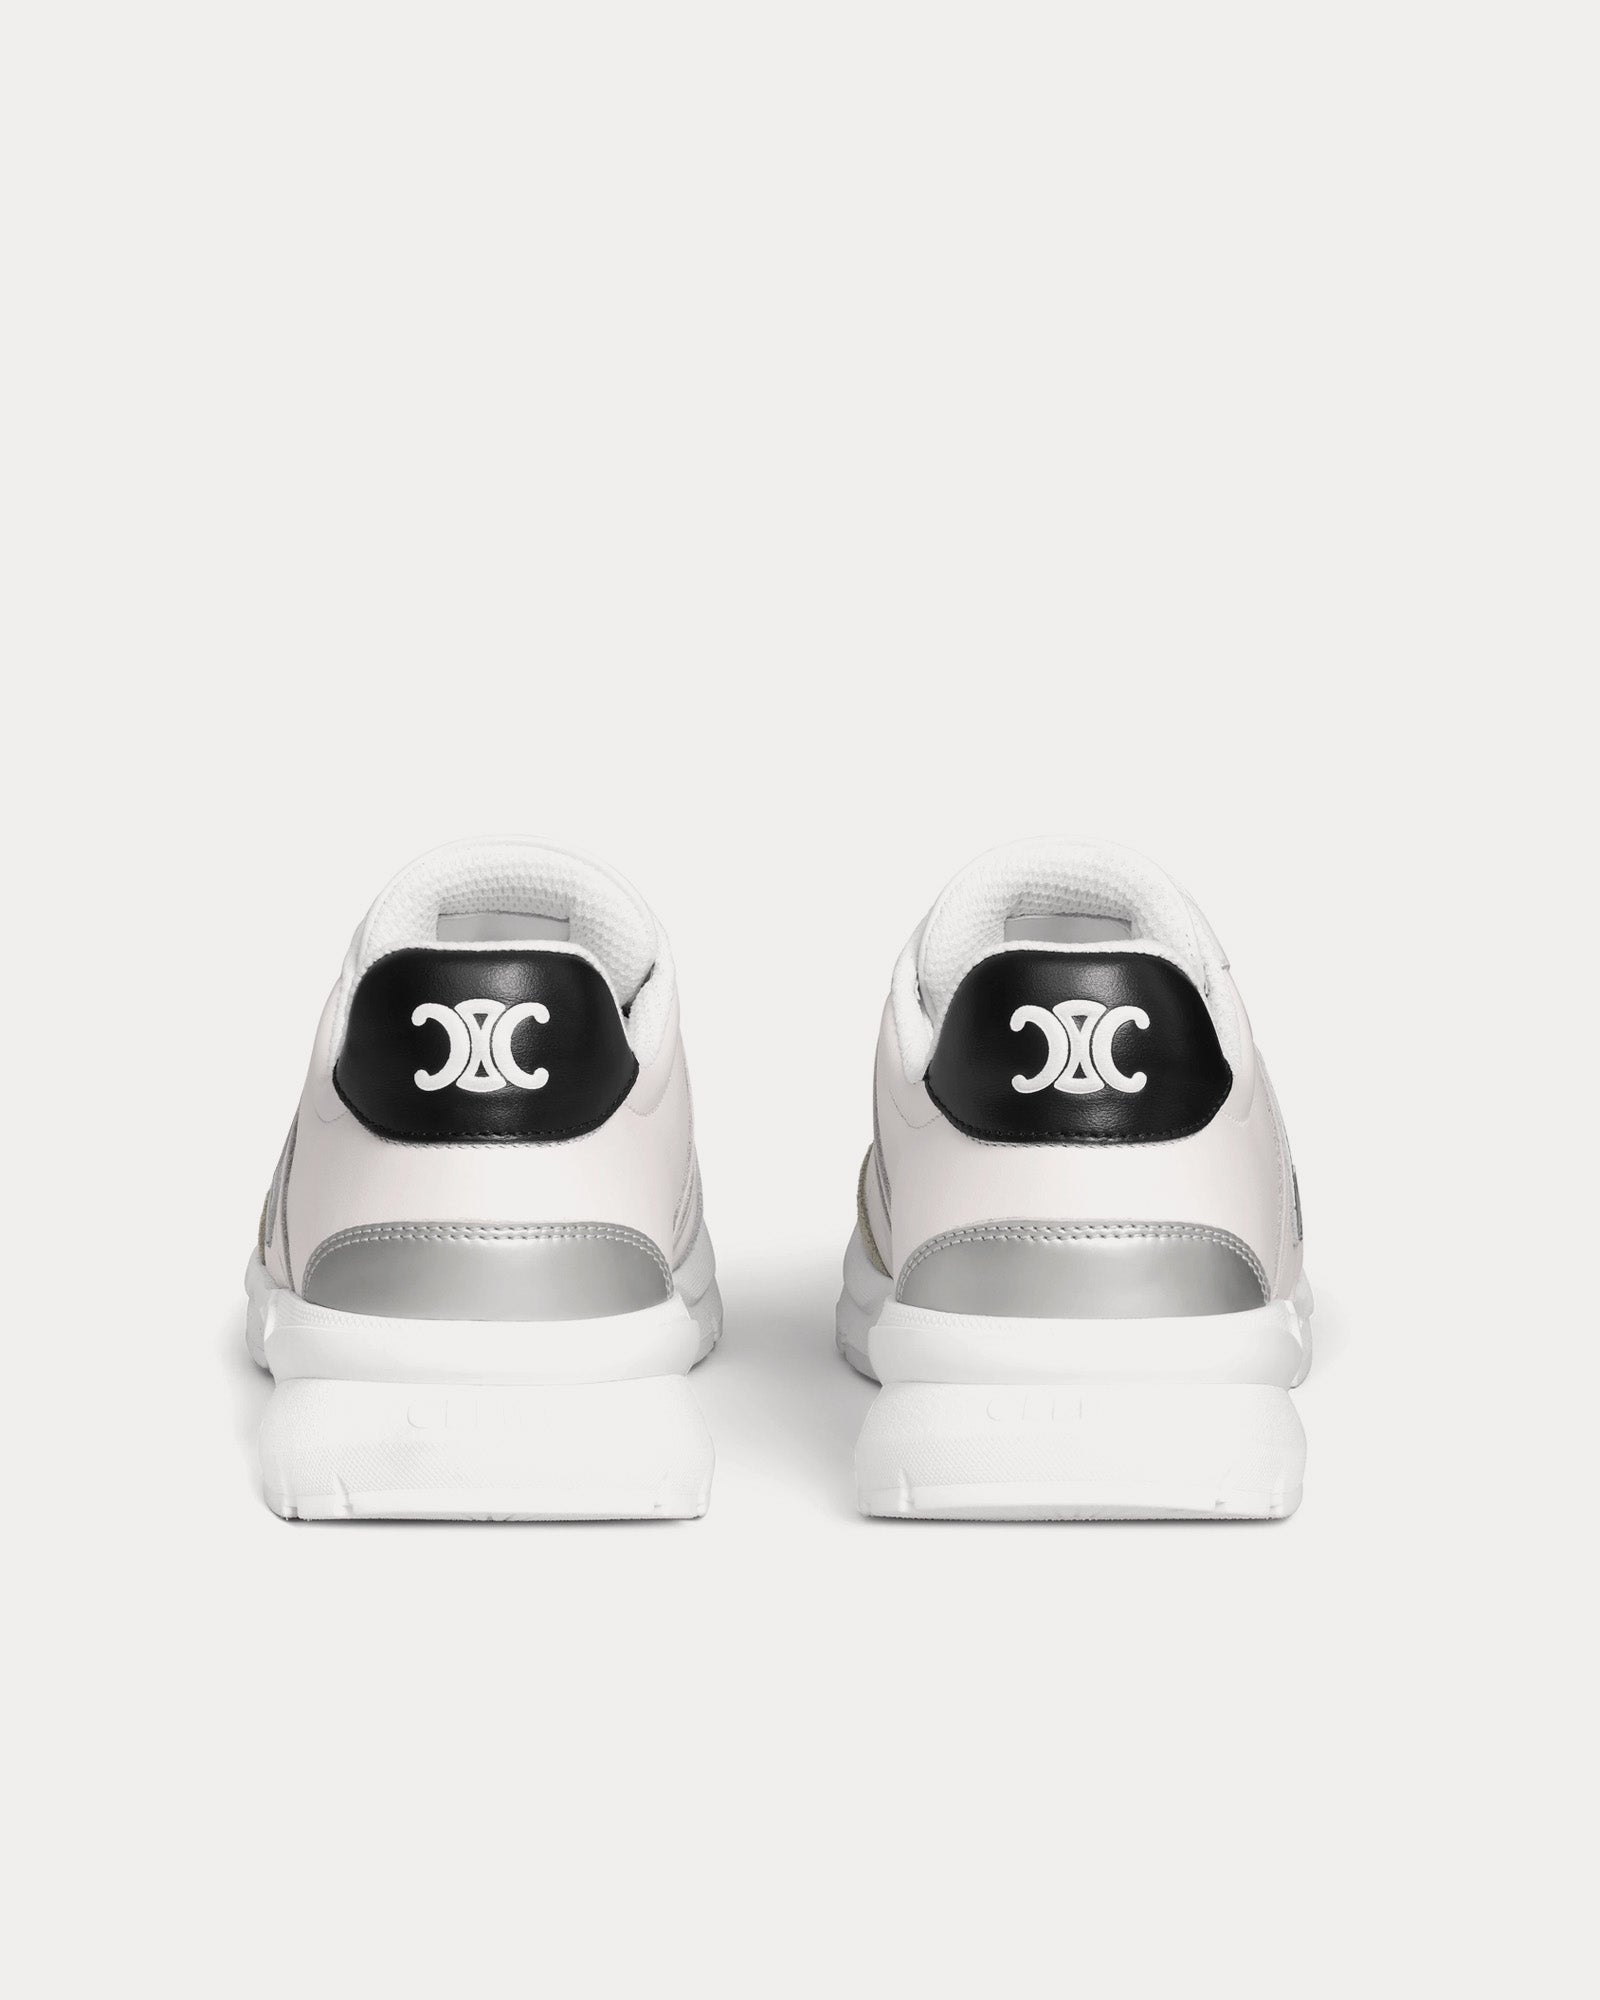 Celine - CR-02 Runner Optic White / Black / Grey / Silver Low Top Sneakers